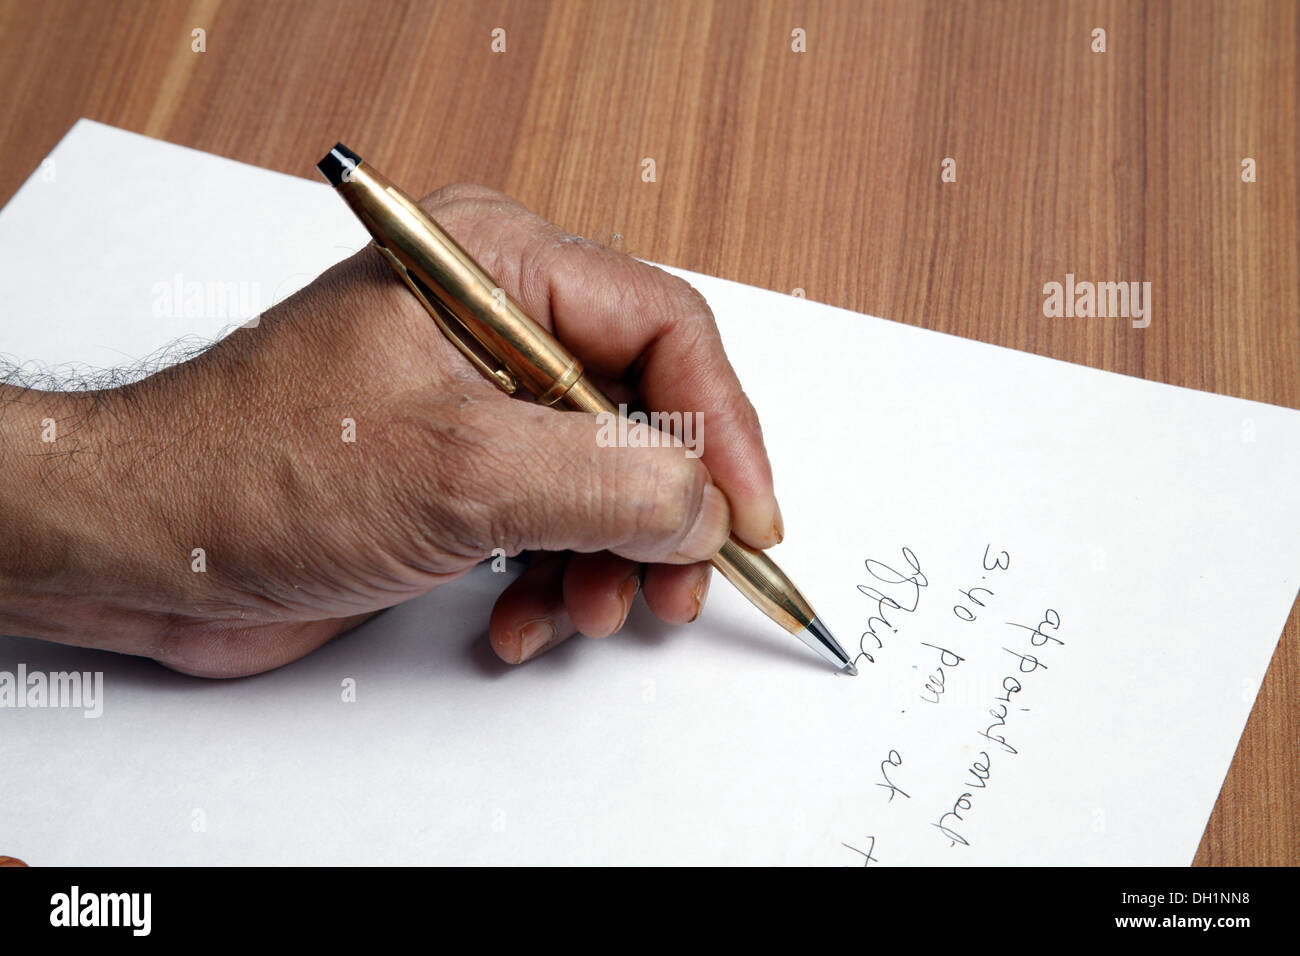 Hombre escrito en inglés sobre papel blanco con PLUMA DE ORO MR#743AD Foto de stock